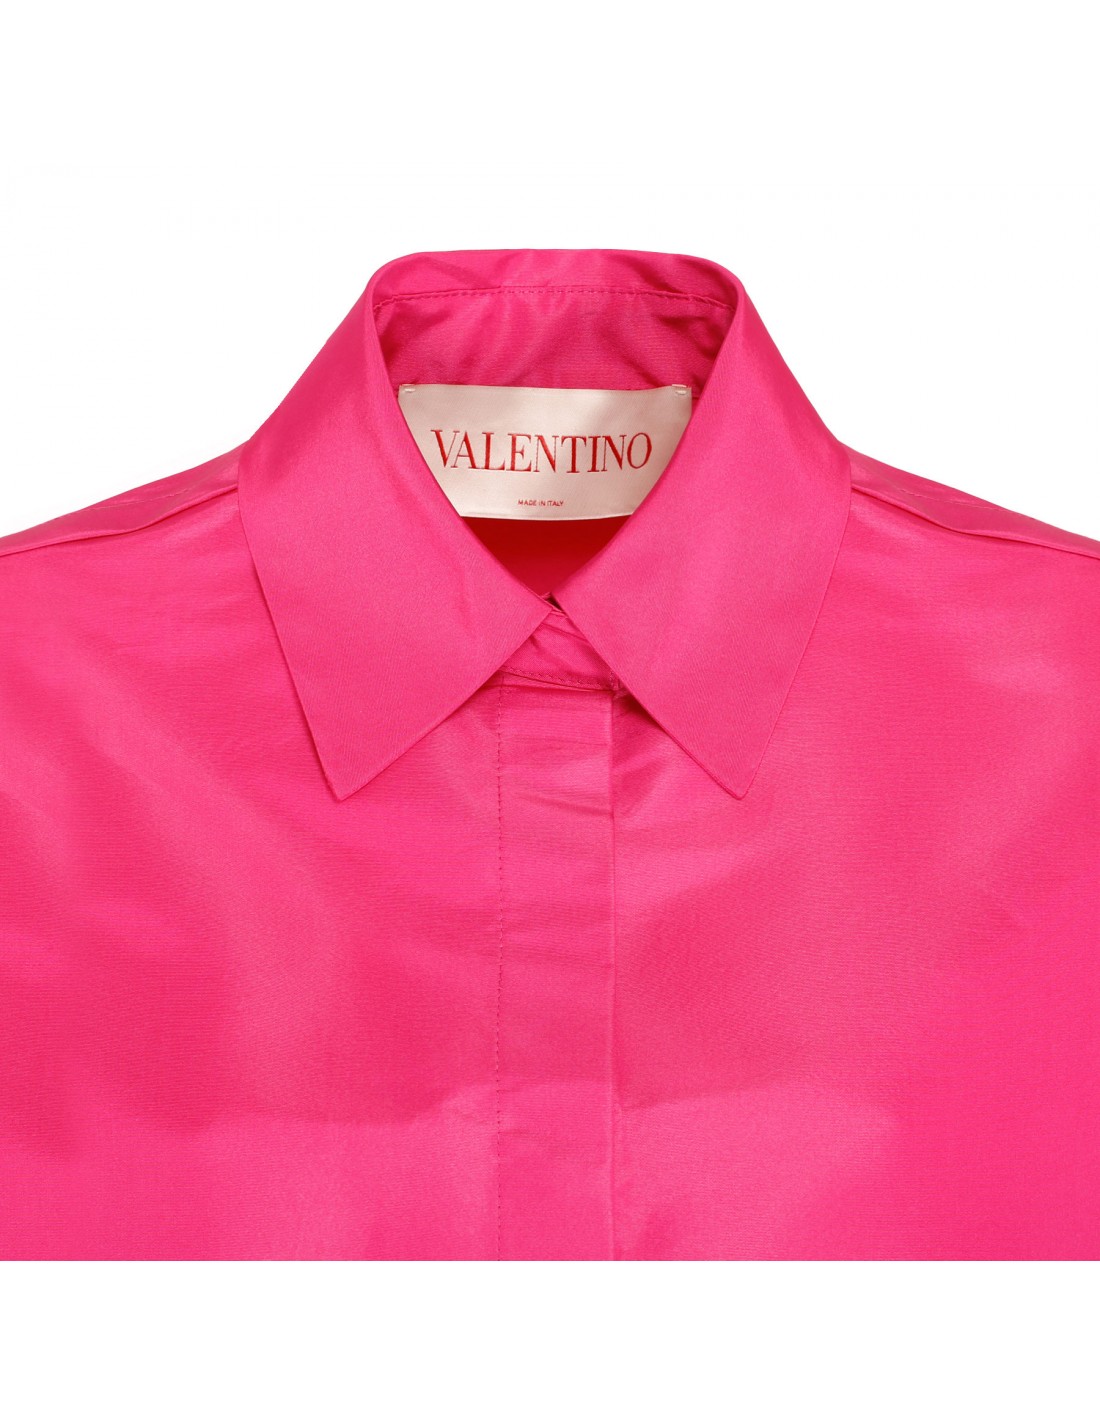 Shocking pink silk shirt